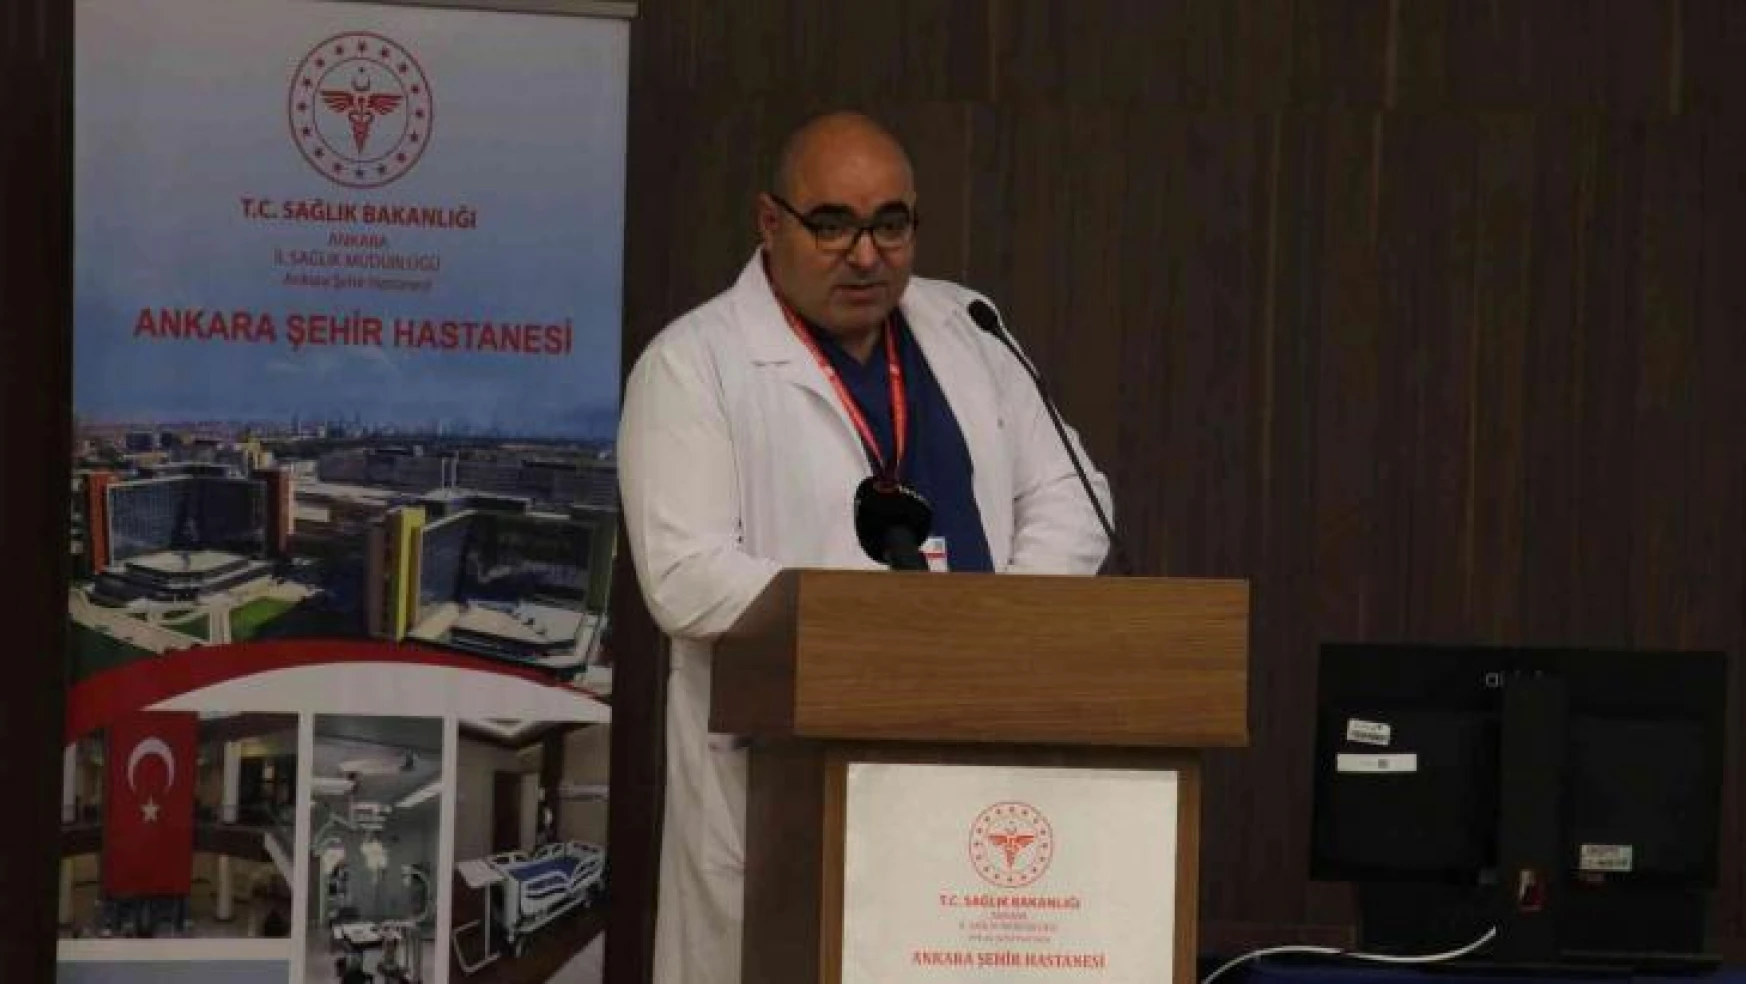 Ankara Şehir Hastanesi Moral Sanat Atölyeleri'nde yıl sonu fuarı